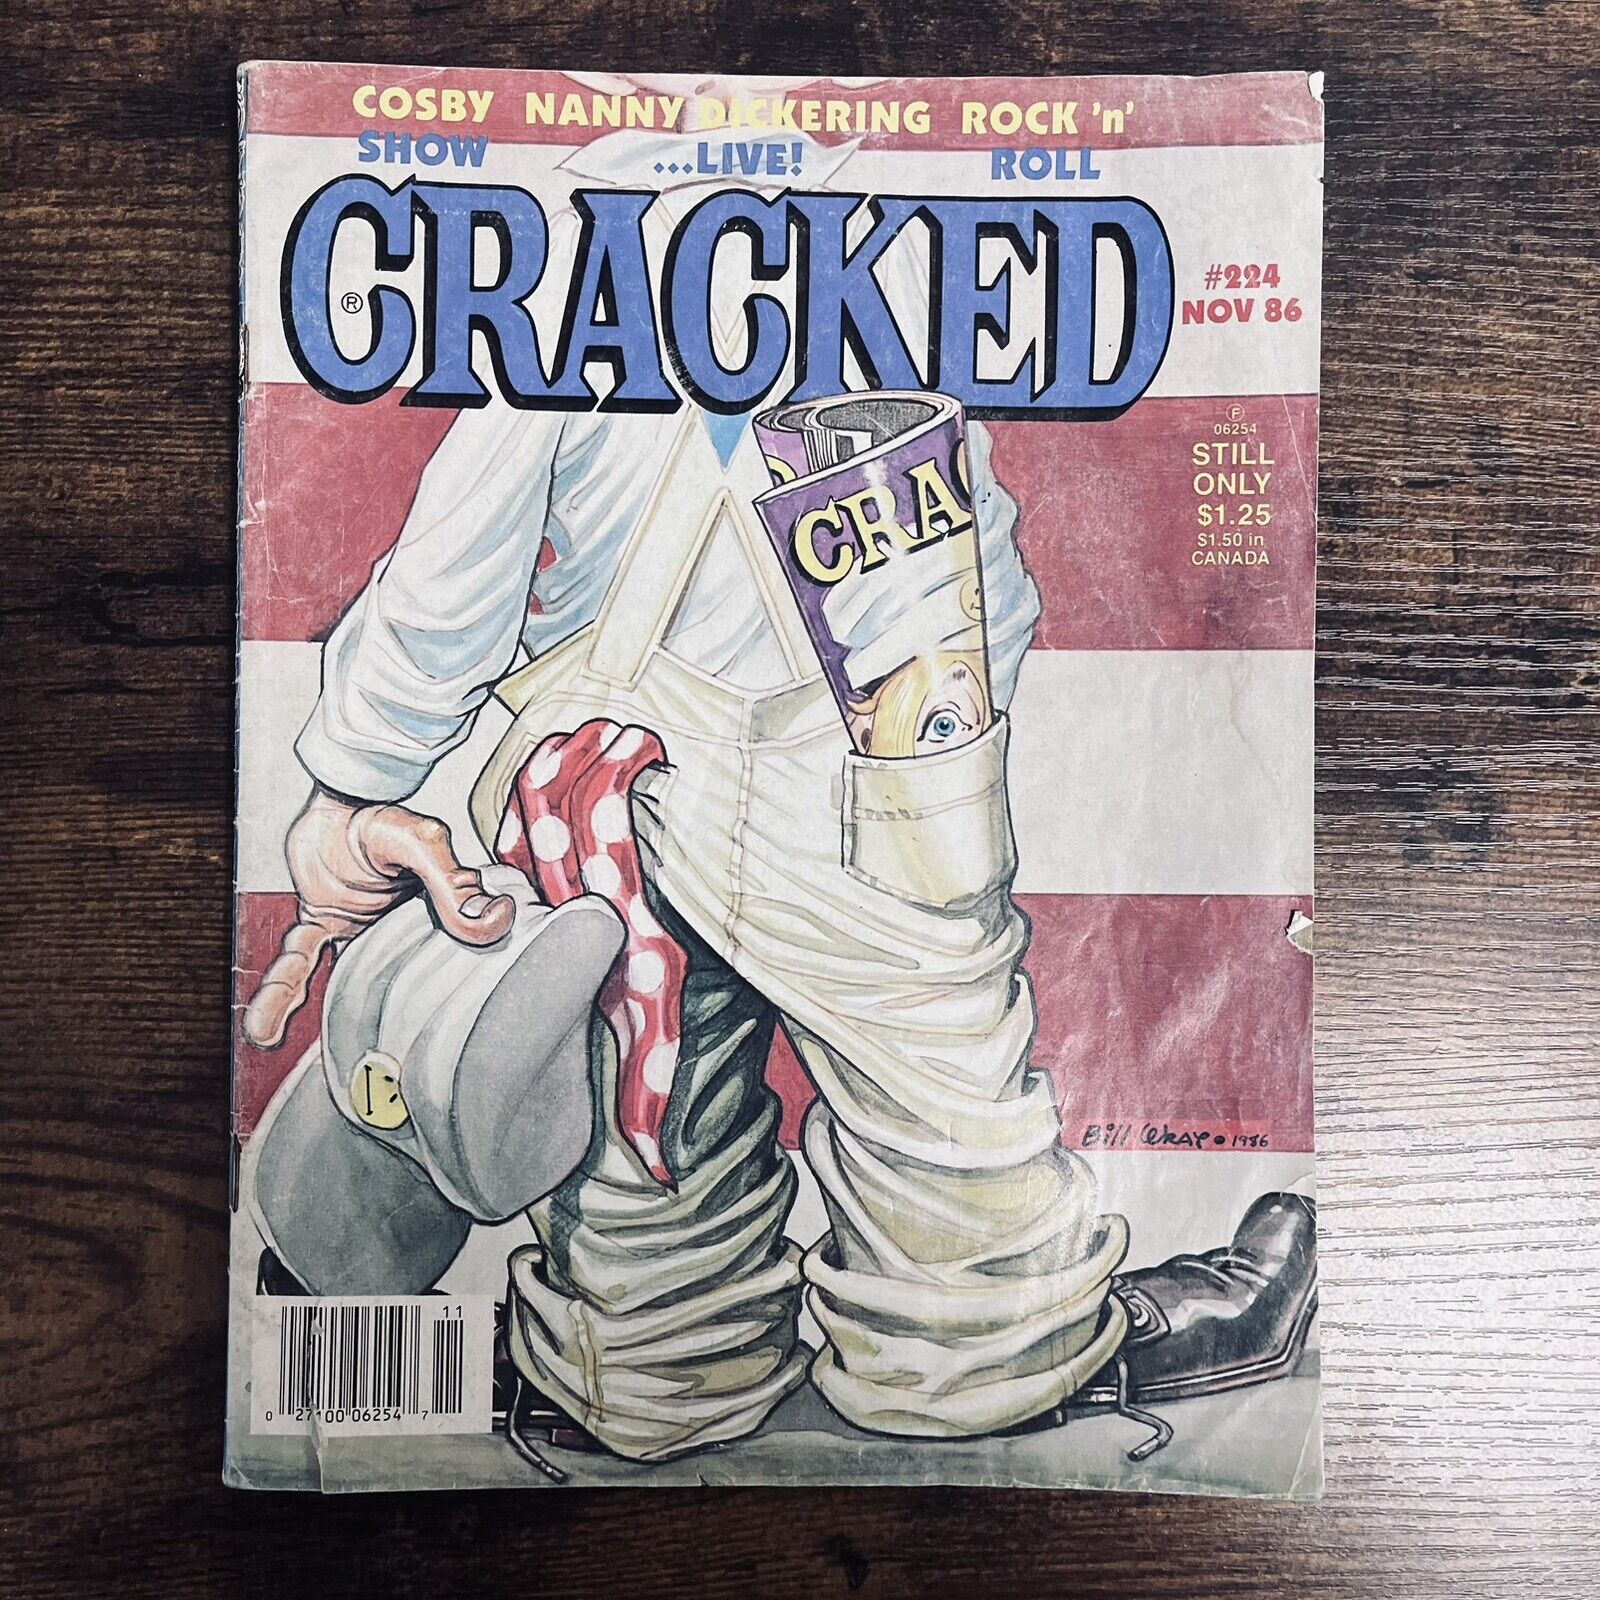 Cracked Magazine #224 Nov 86 Issue